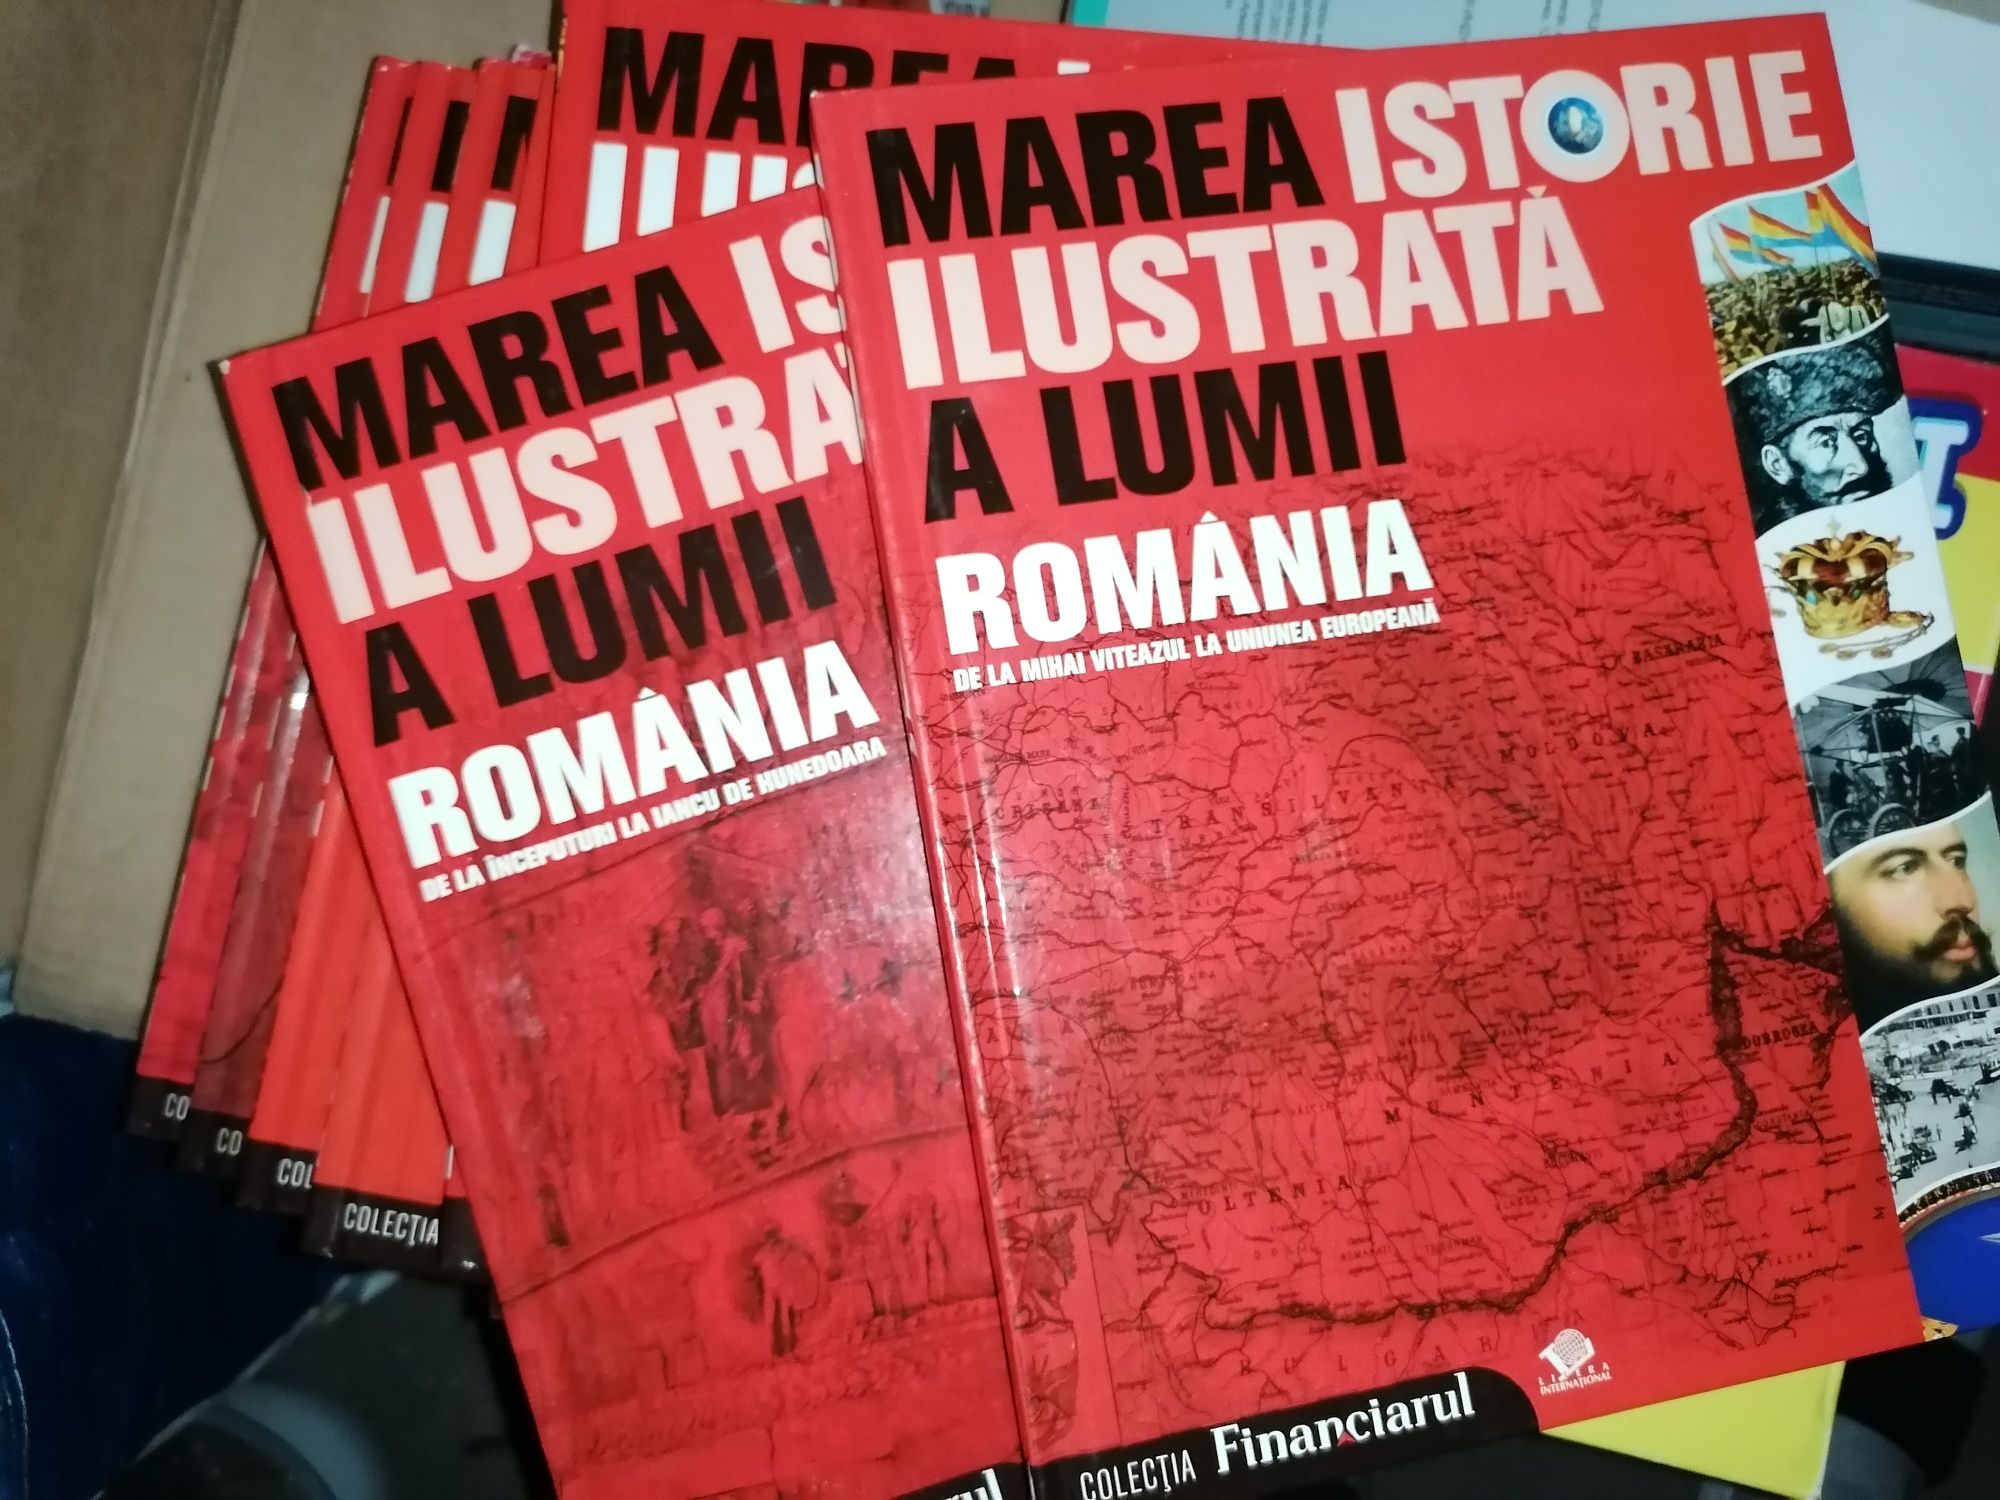 Marea Istorie ilustrată a lumii + României